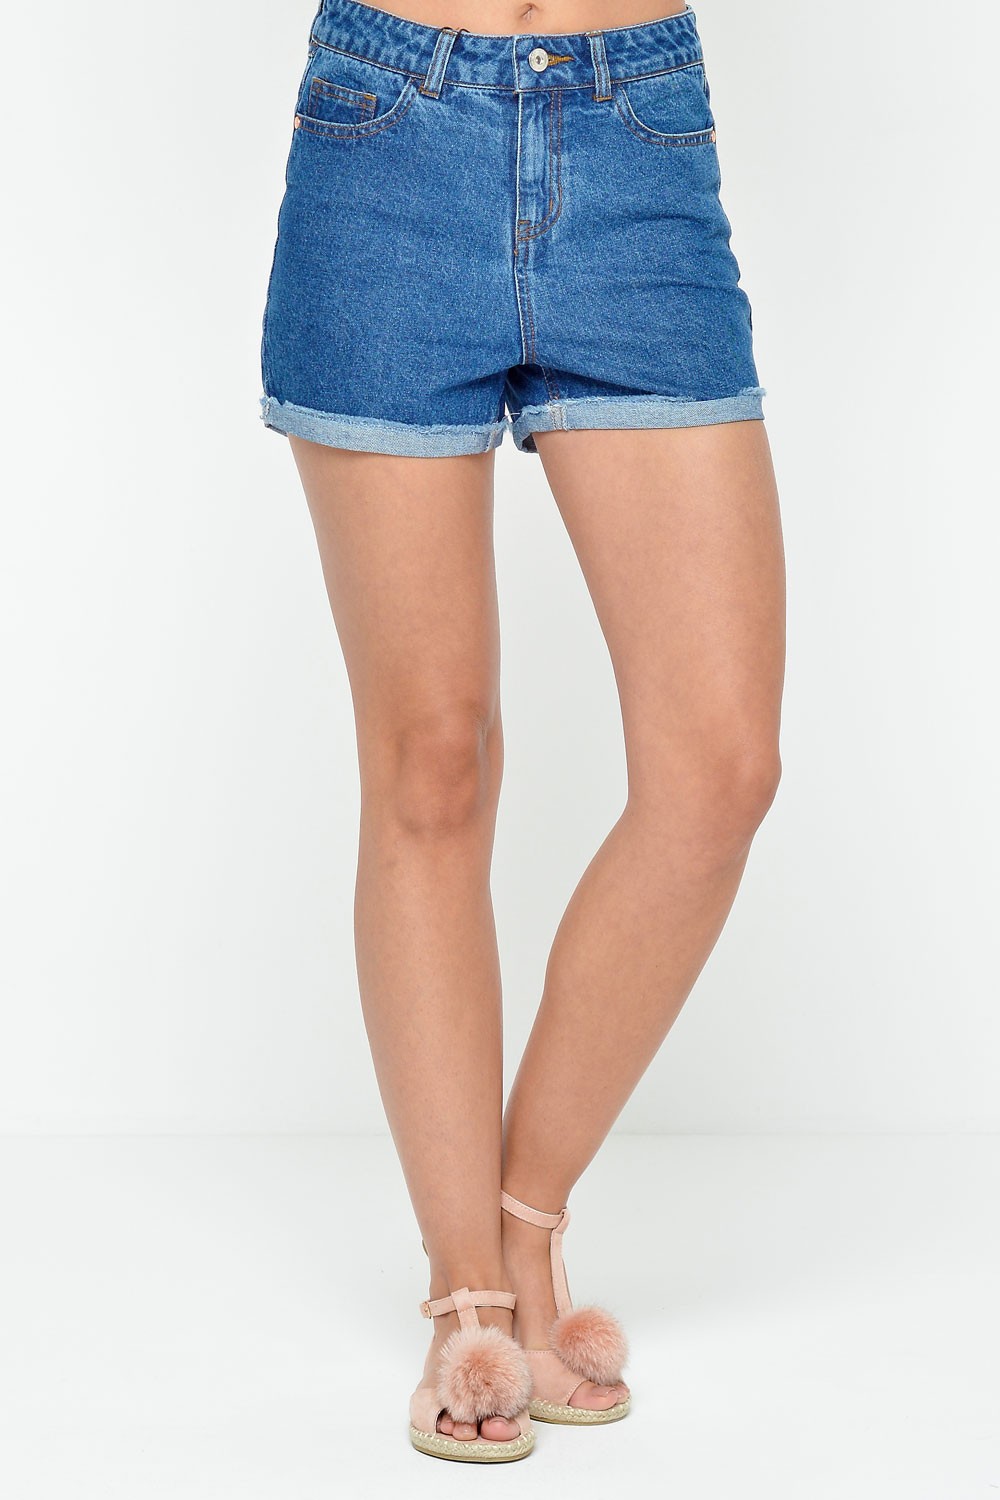 Vero Moda Be Denim Shorts in Dark Blue | iCLOTHING